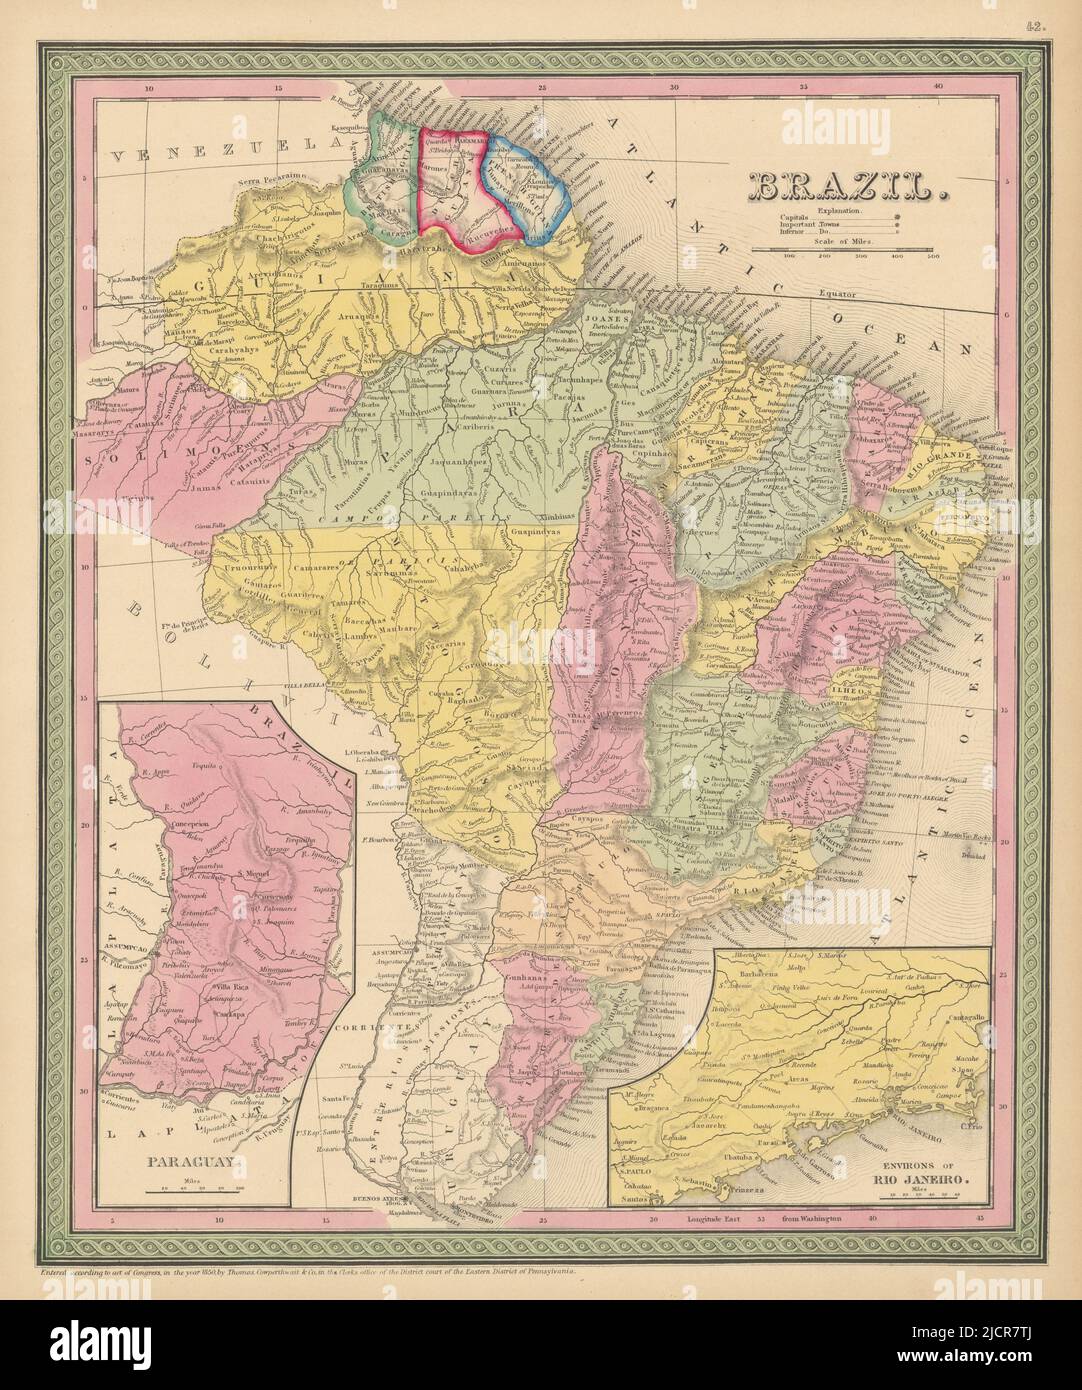 Brasilien, Paraguay und die Guianas. Umgebung von Rio de Janeiro. COWPERTHWAIT 1852 MAP Stockfoto